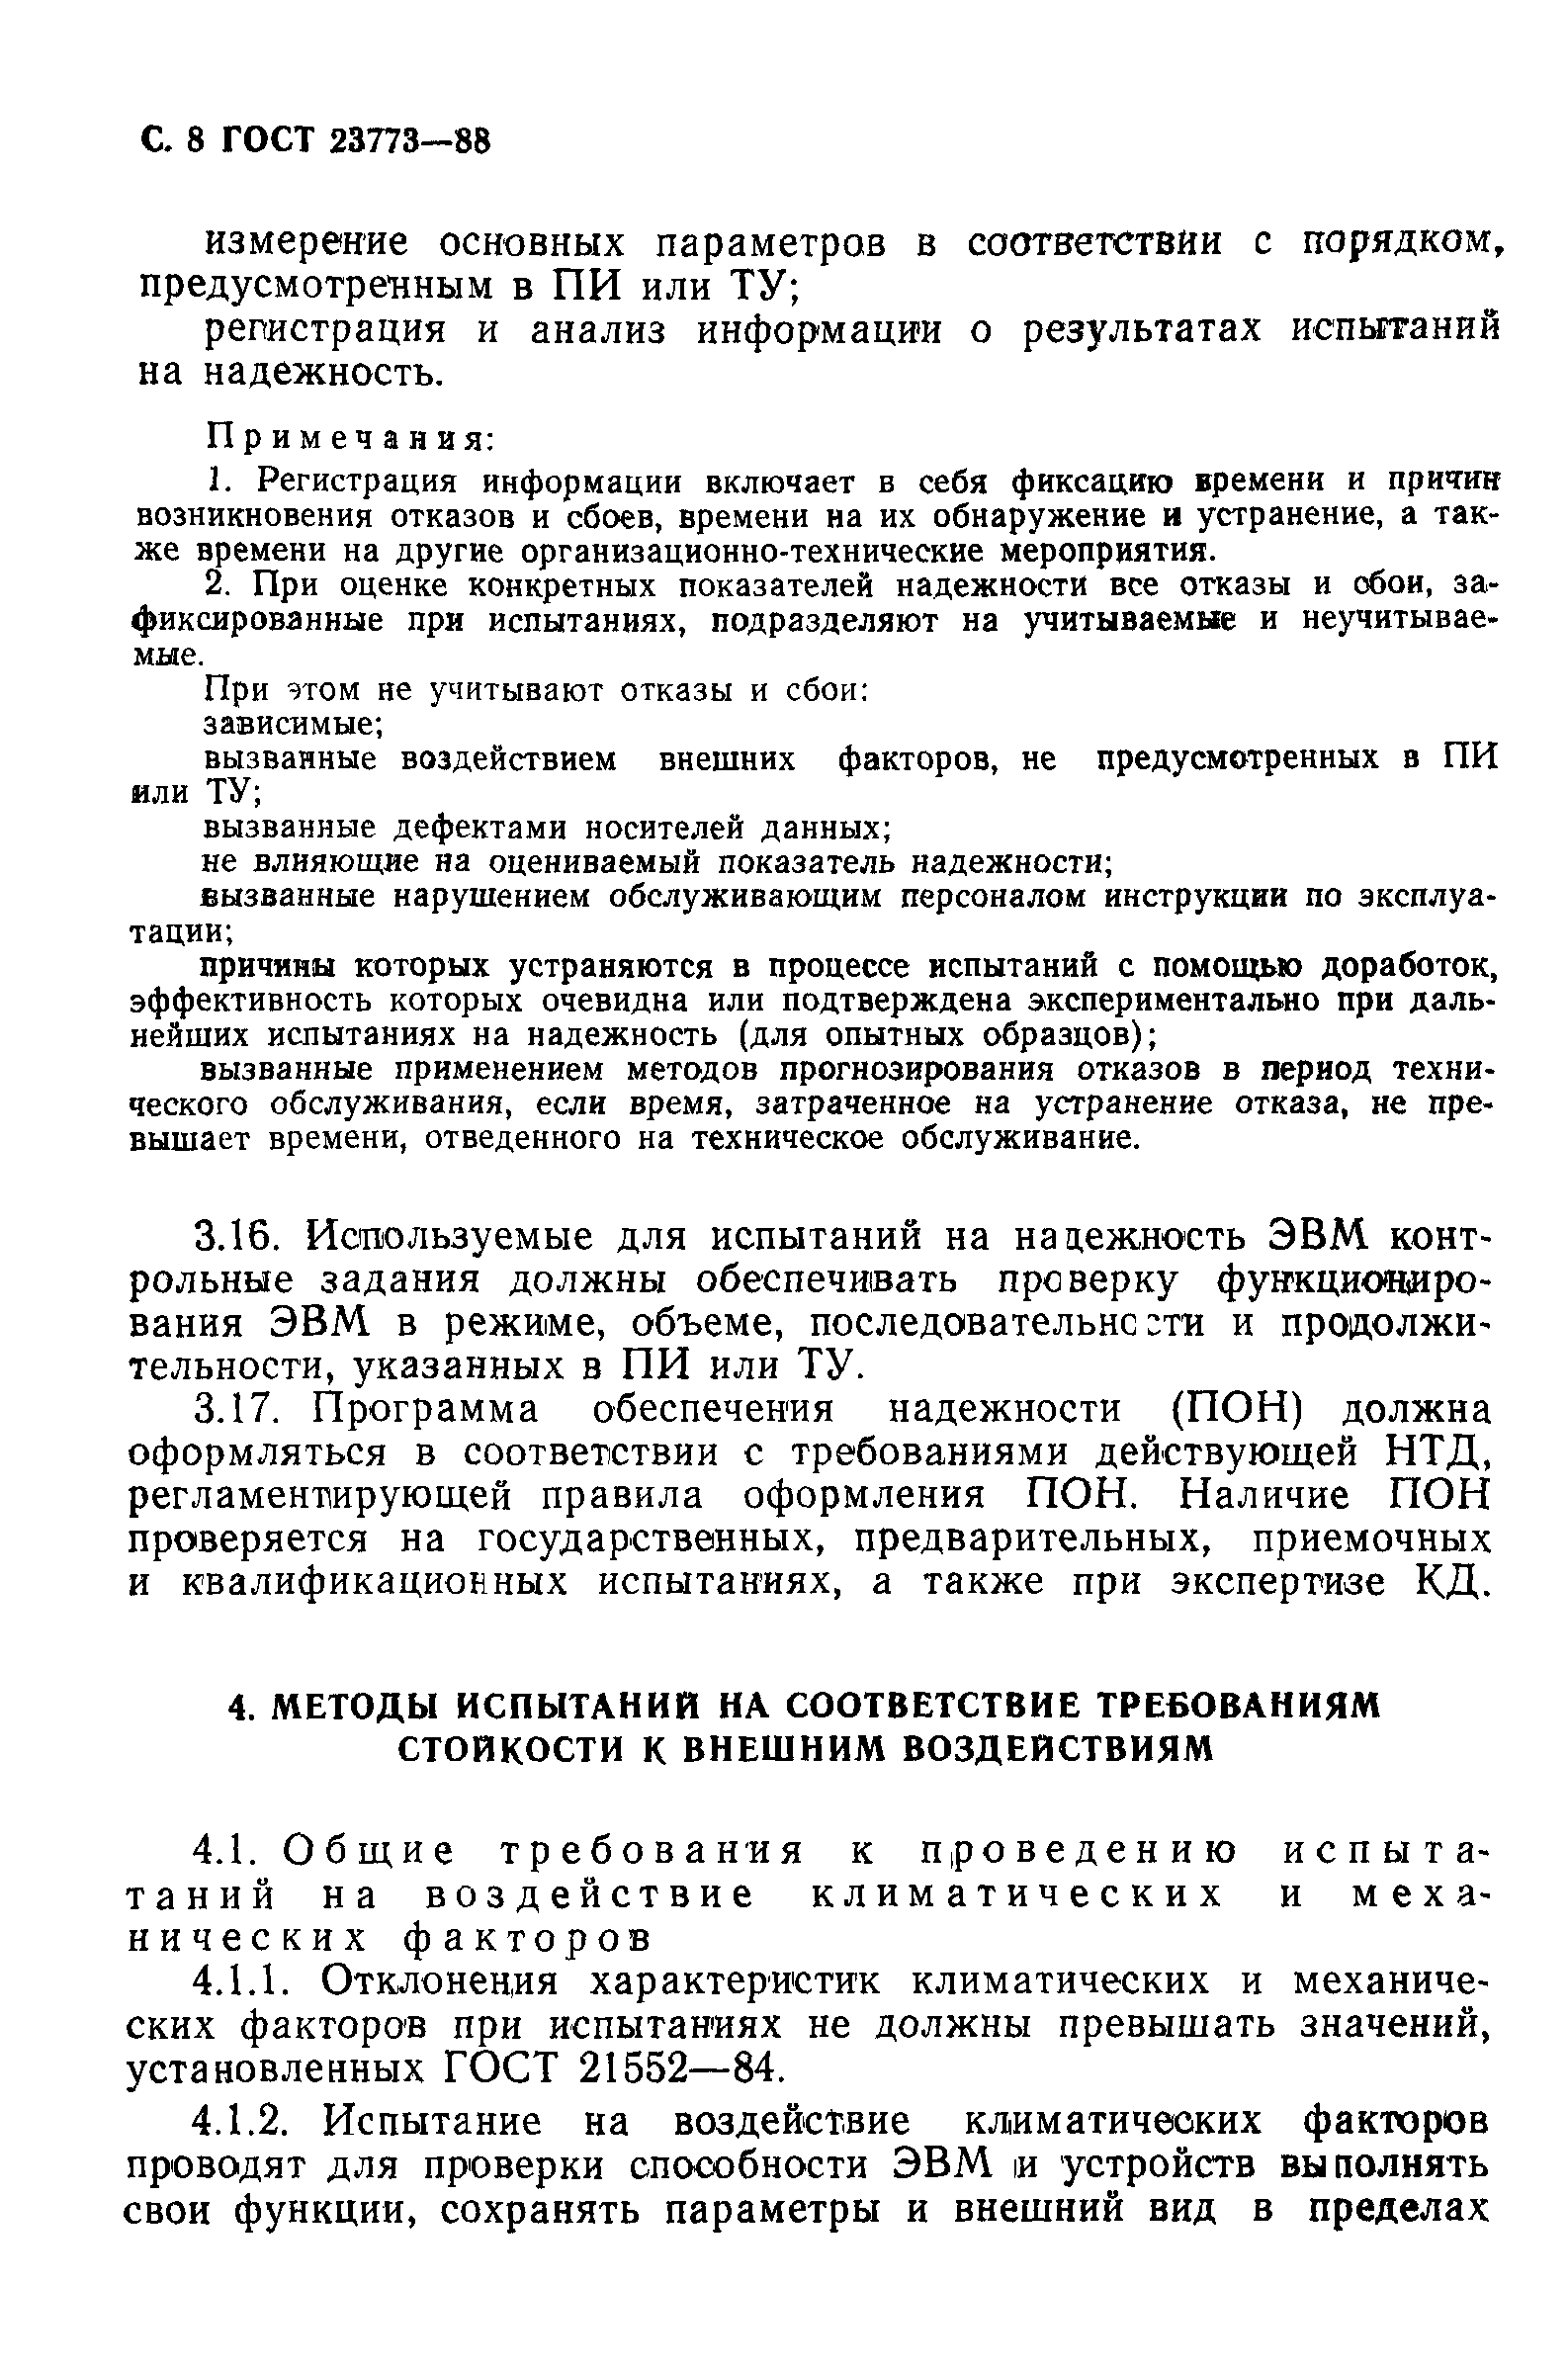 образцы документов смк по ГОСТ РВ 